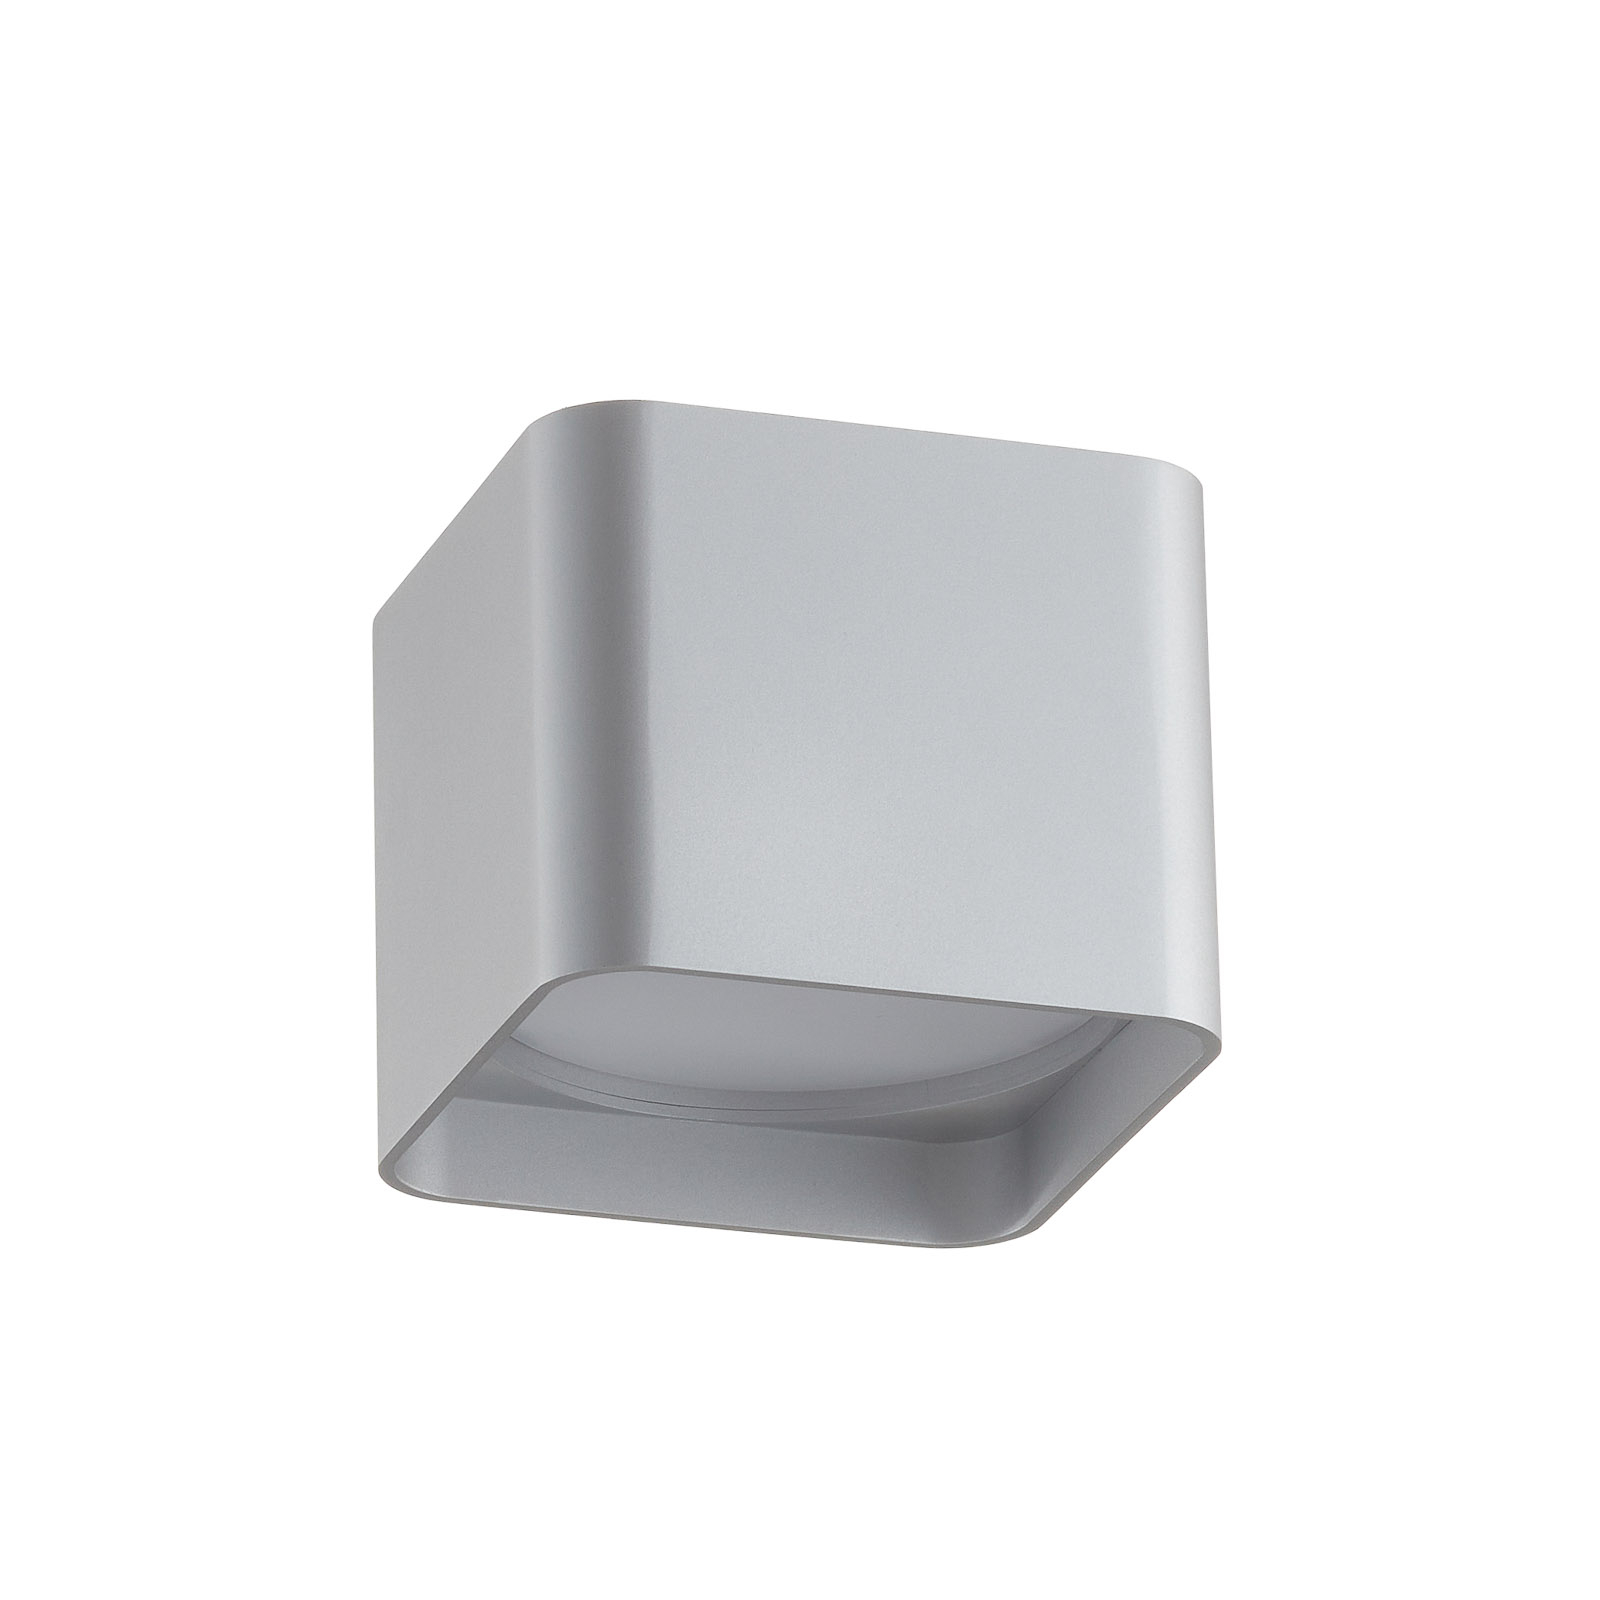 Helestra Dora LED ceiling light angular silver